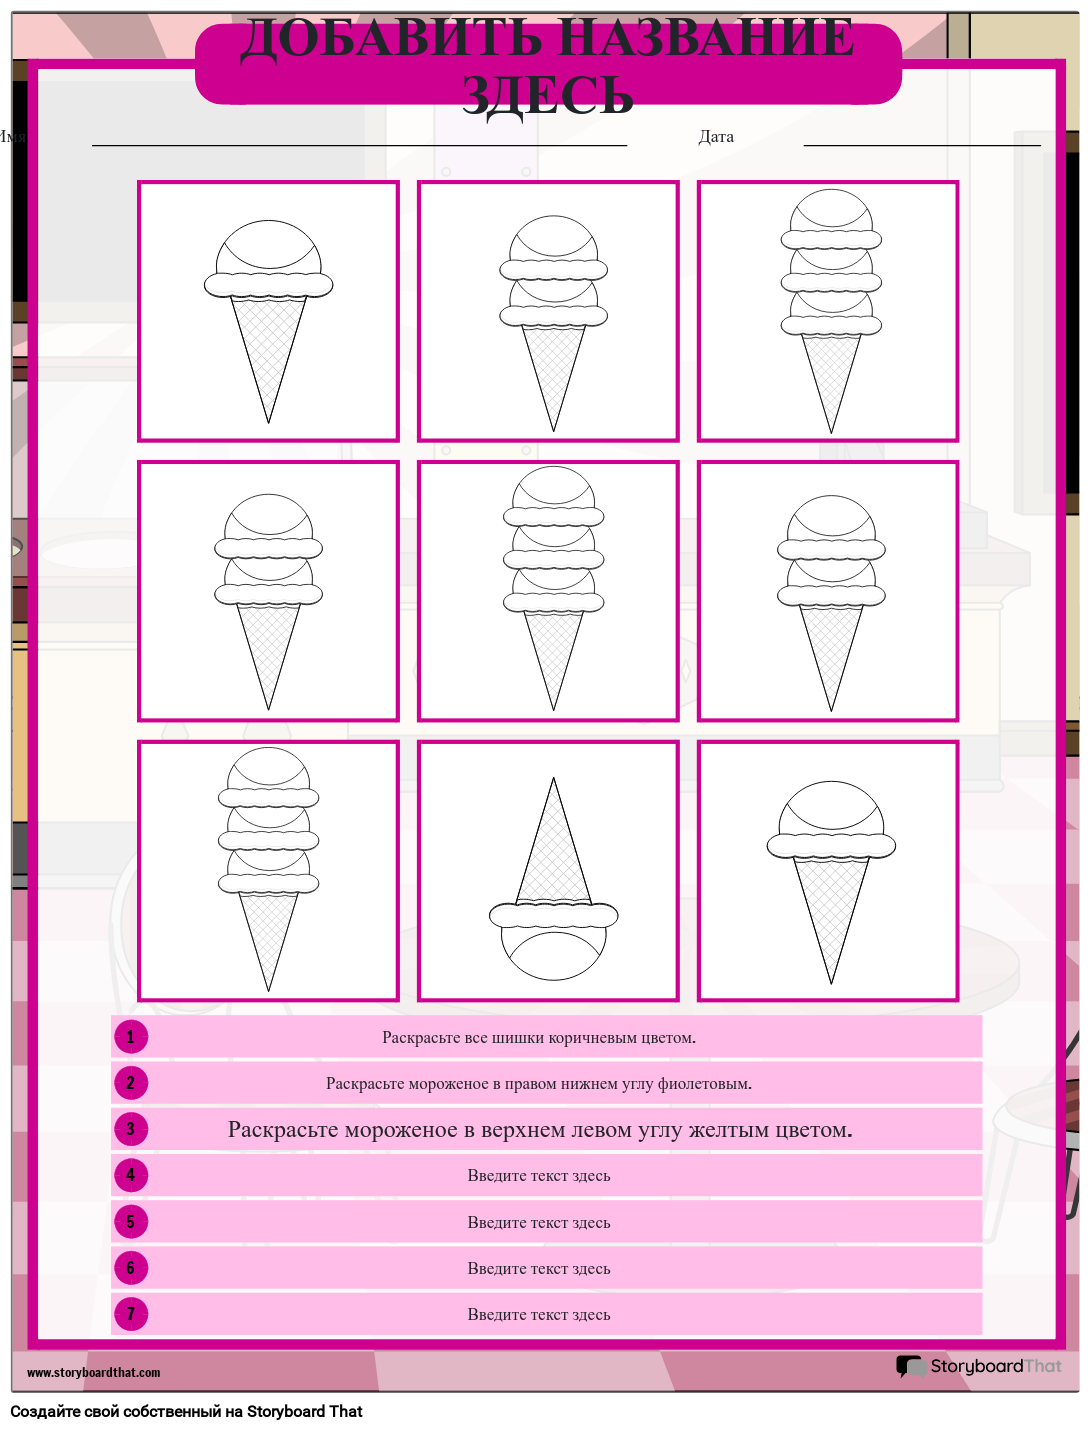 Рабочий Лист по Инструкциям на Тему Мороженого